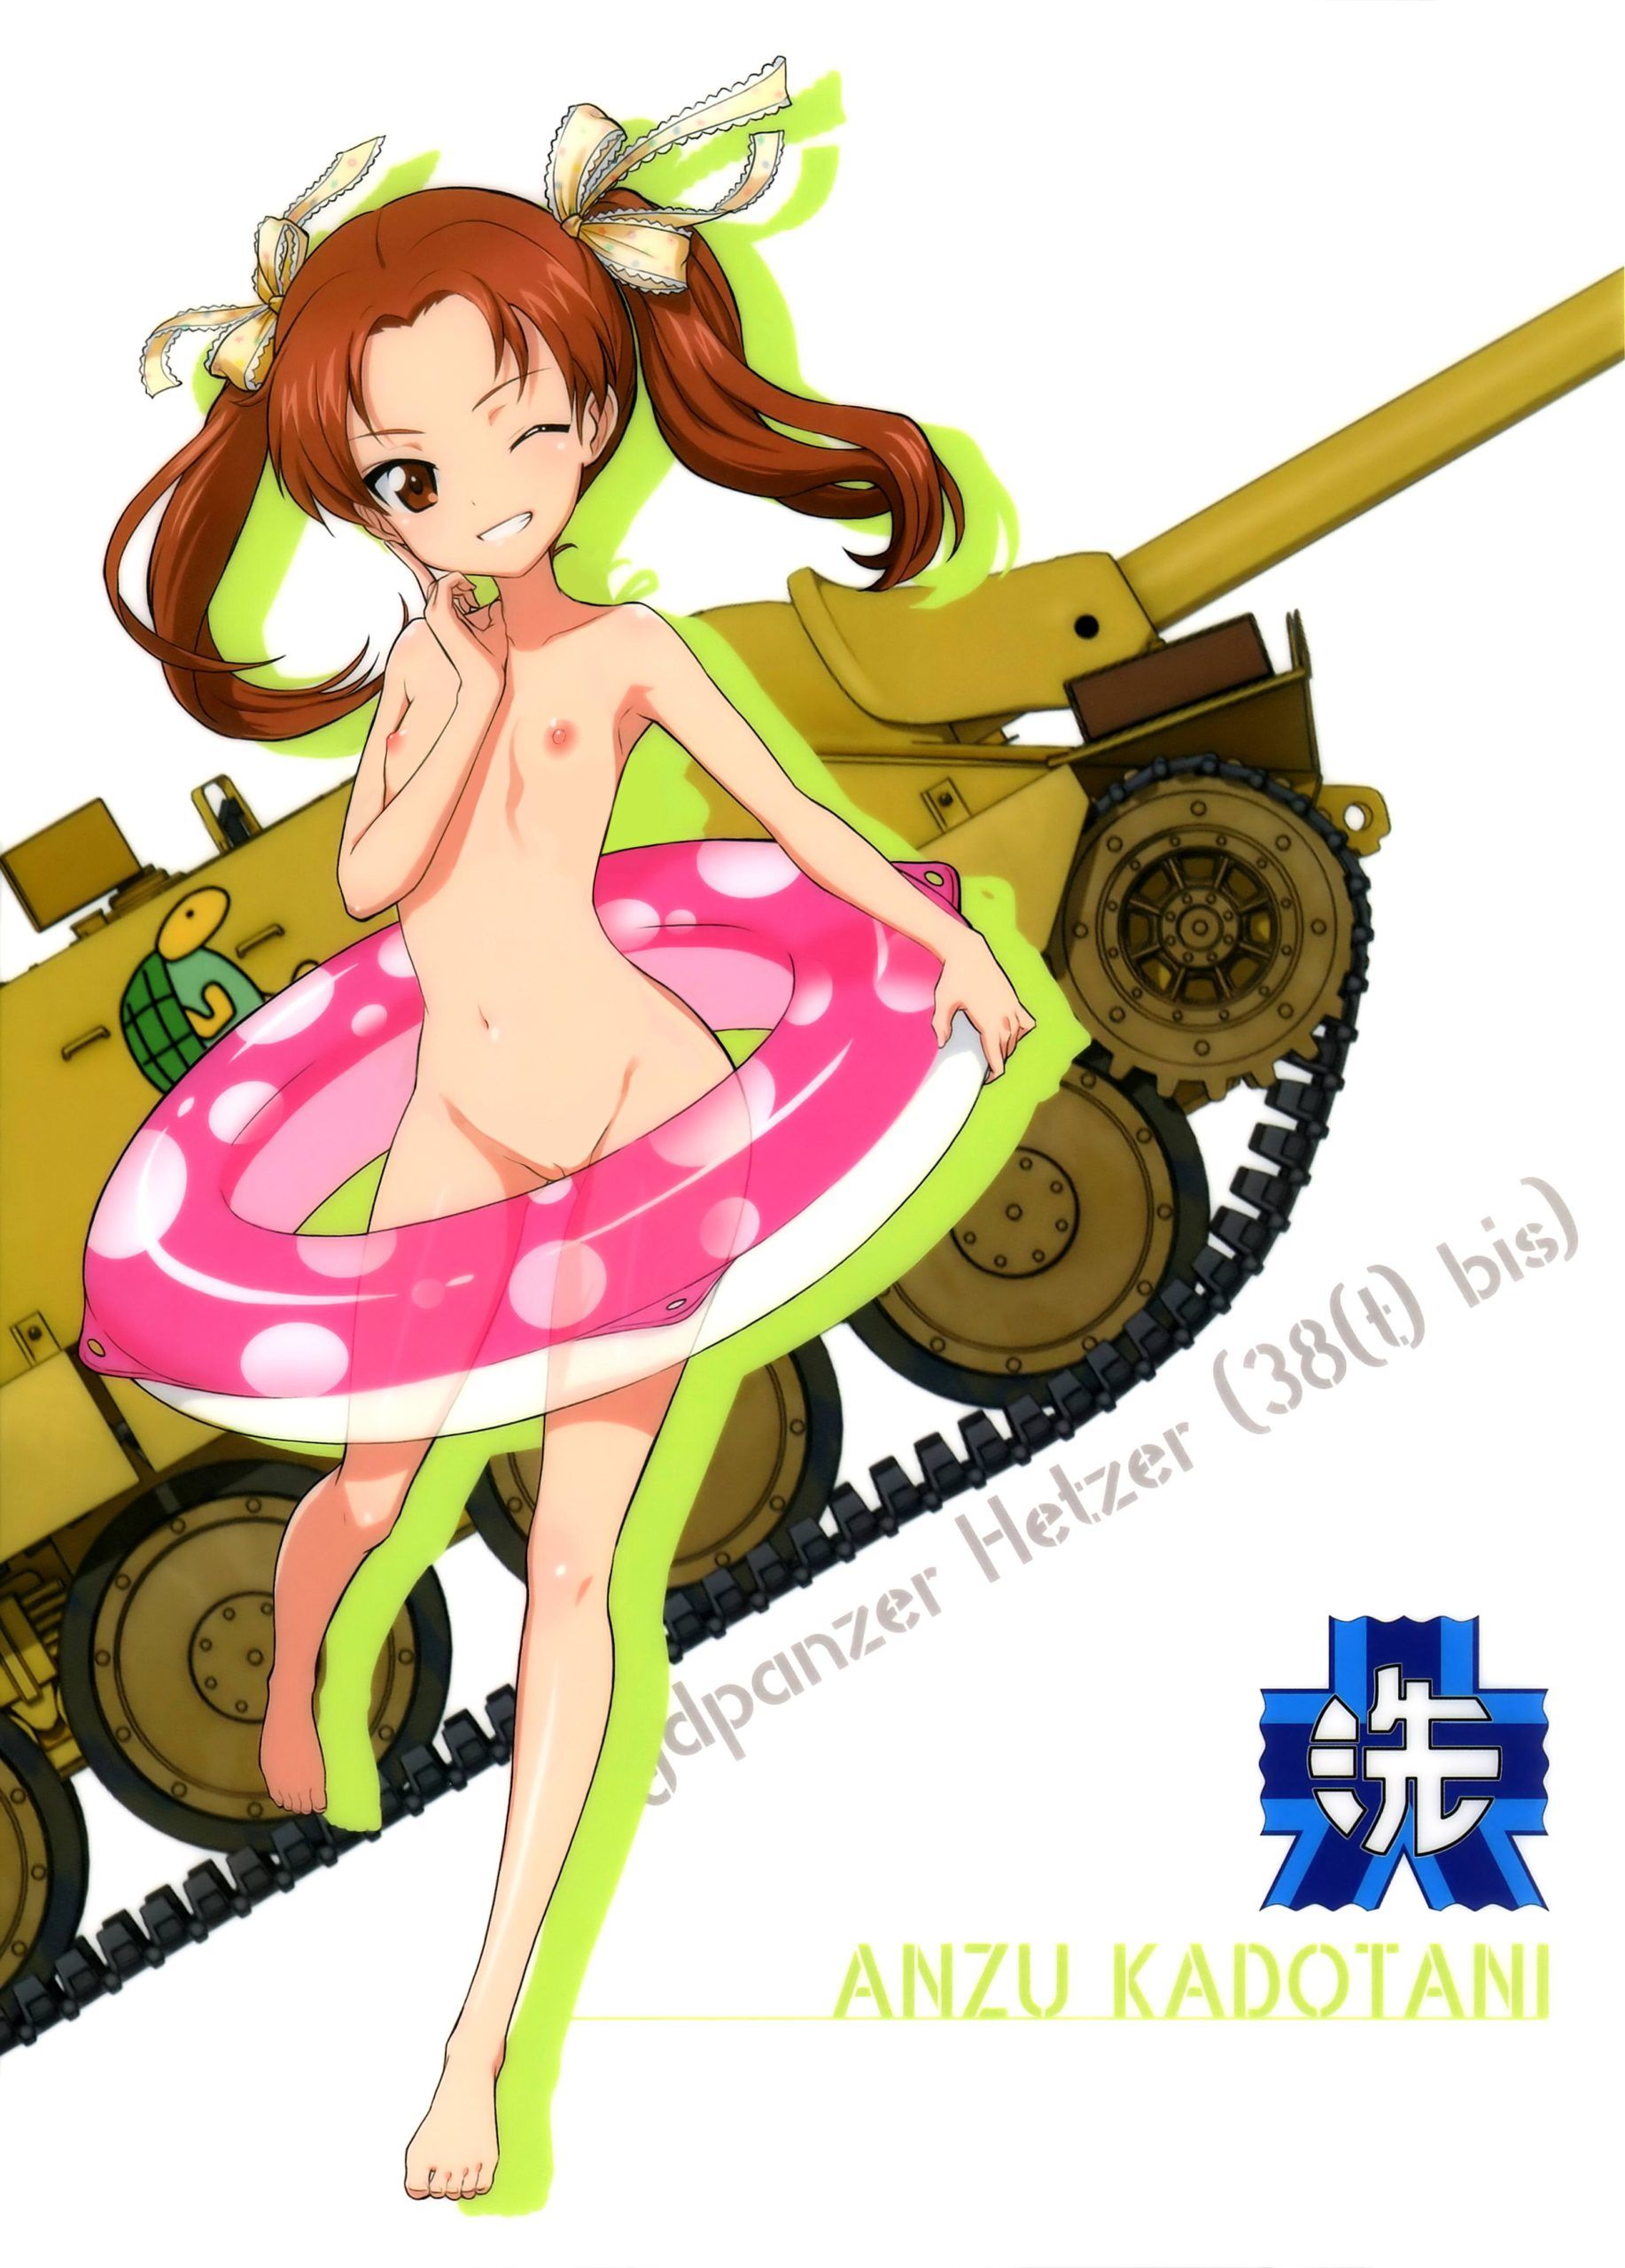 Girls Panzer Erotic Images of Galpan Heroines Vol.93 9